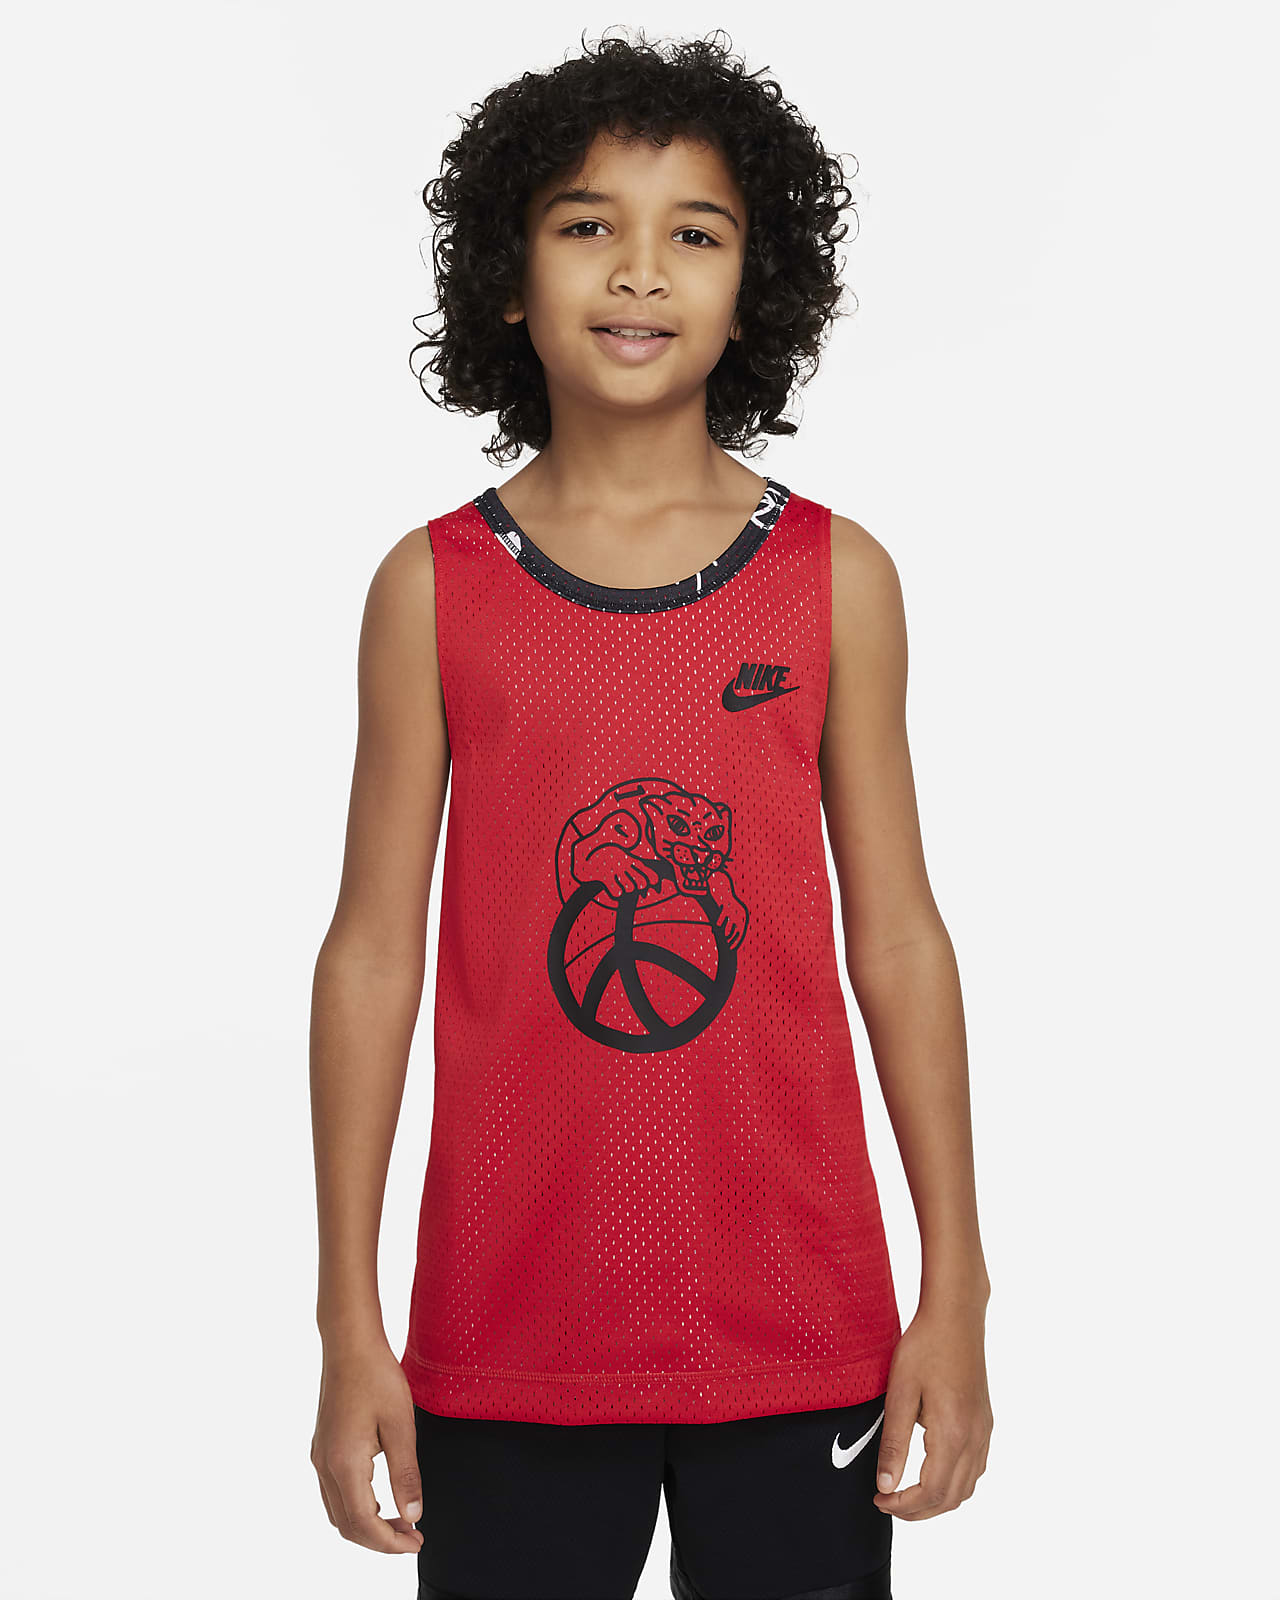 Nike Culture of Basketball Omkeerbare basketbaljersey voor jongens